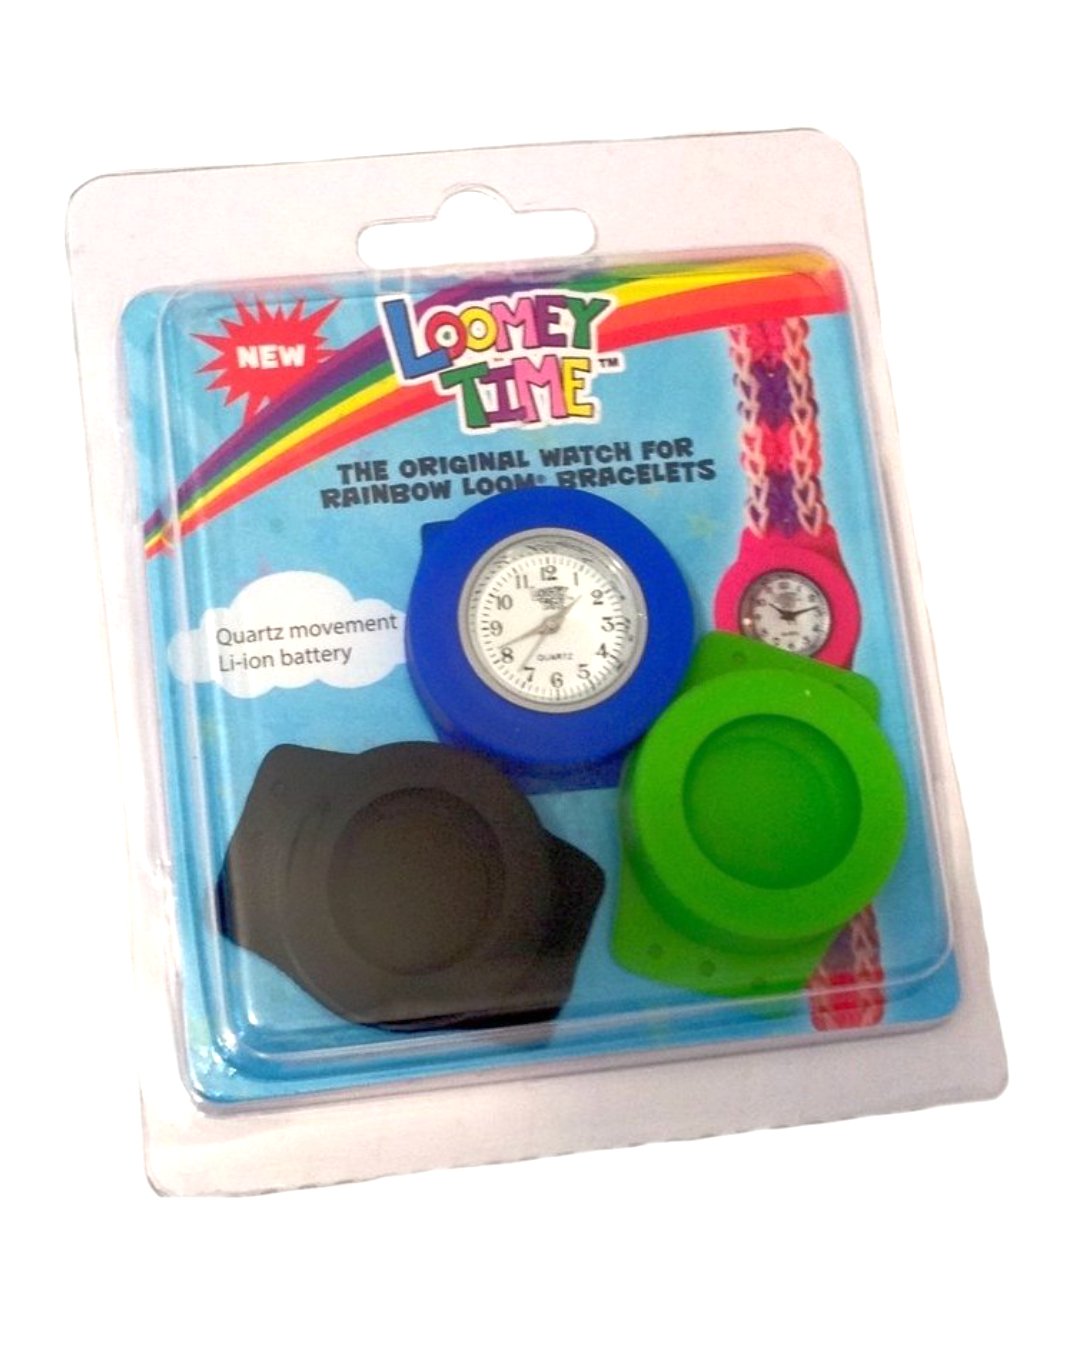 Armbanduhr für Kinder mit austauschbarer Hülle in Blau, Schwarz oder Grün zum Basteln von eigenen Loom Armbändern